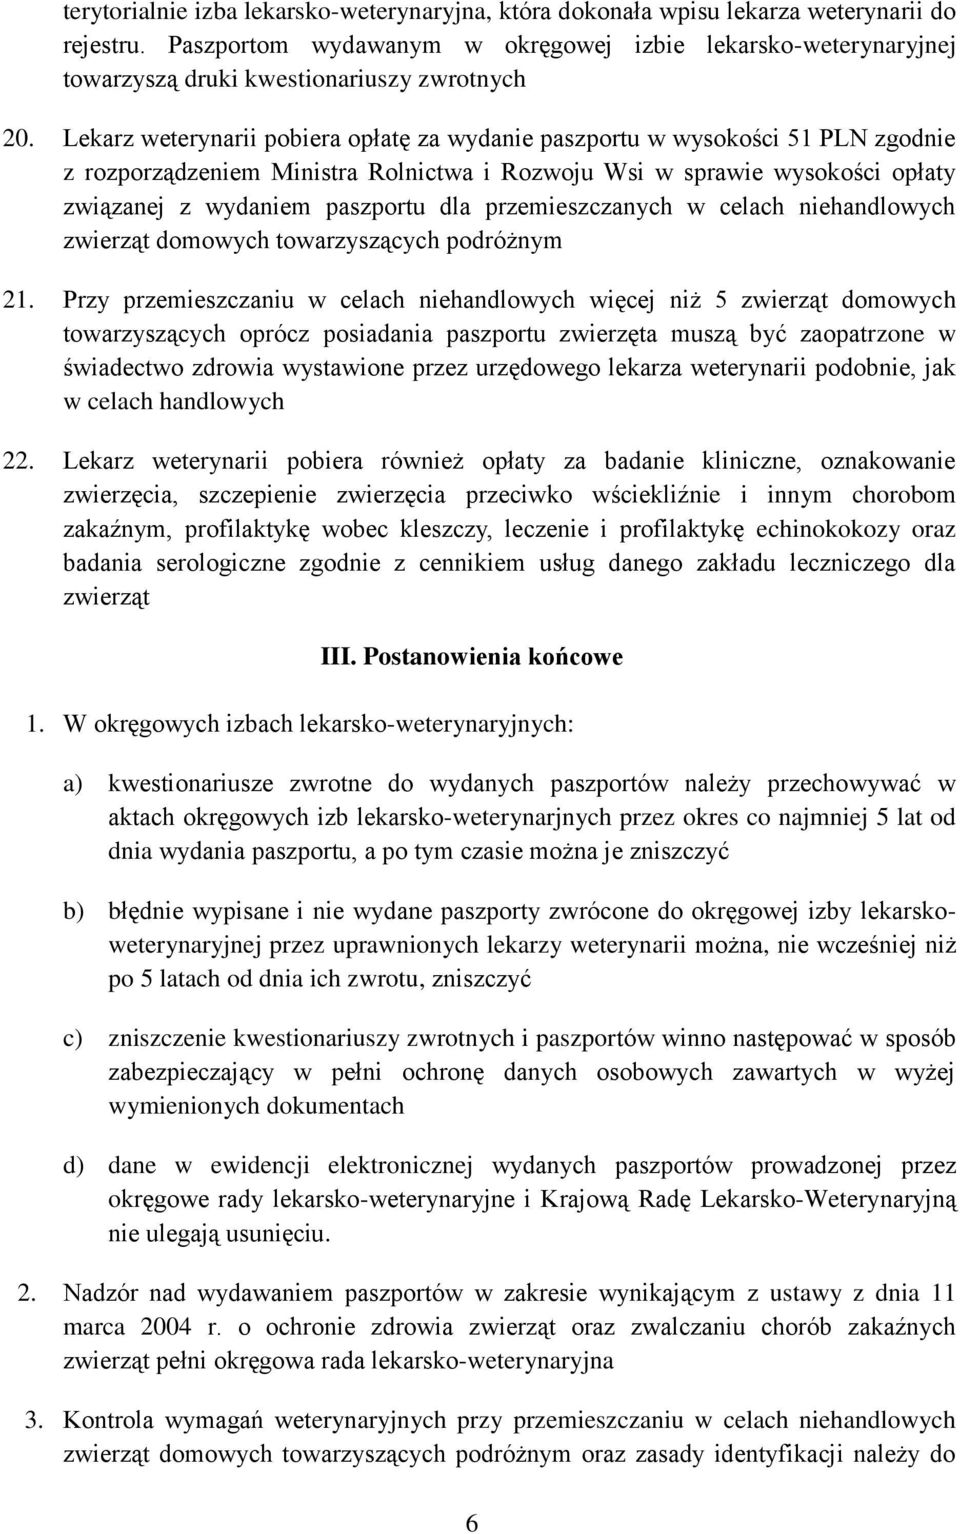 Lekarz weterynarii pobiera opłatę za wydanie paszportu w wysokości 51 PLN zgodnie z rozporządzeniem Ministra Rolnictwa i Rozwoju Wsi w sprawie wysokości opłaty związanej z wydaniem paszportu dla